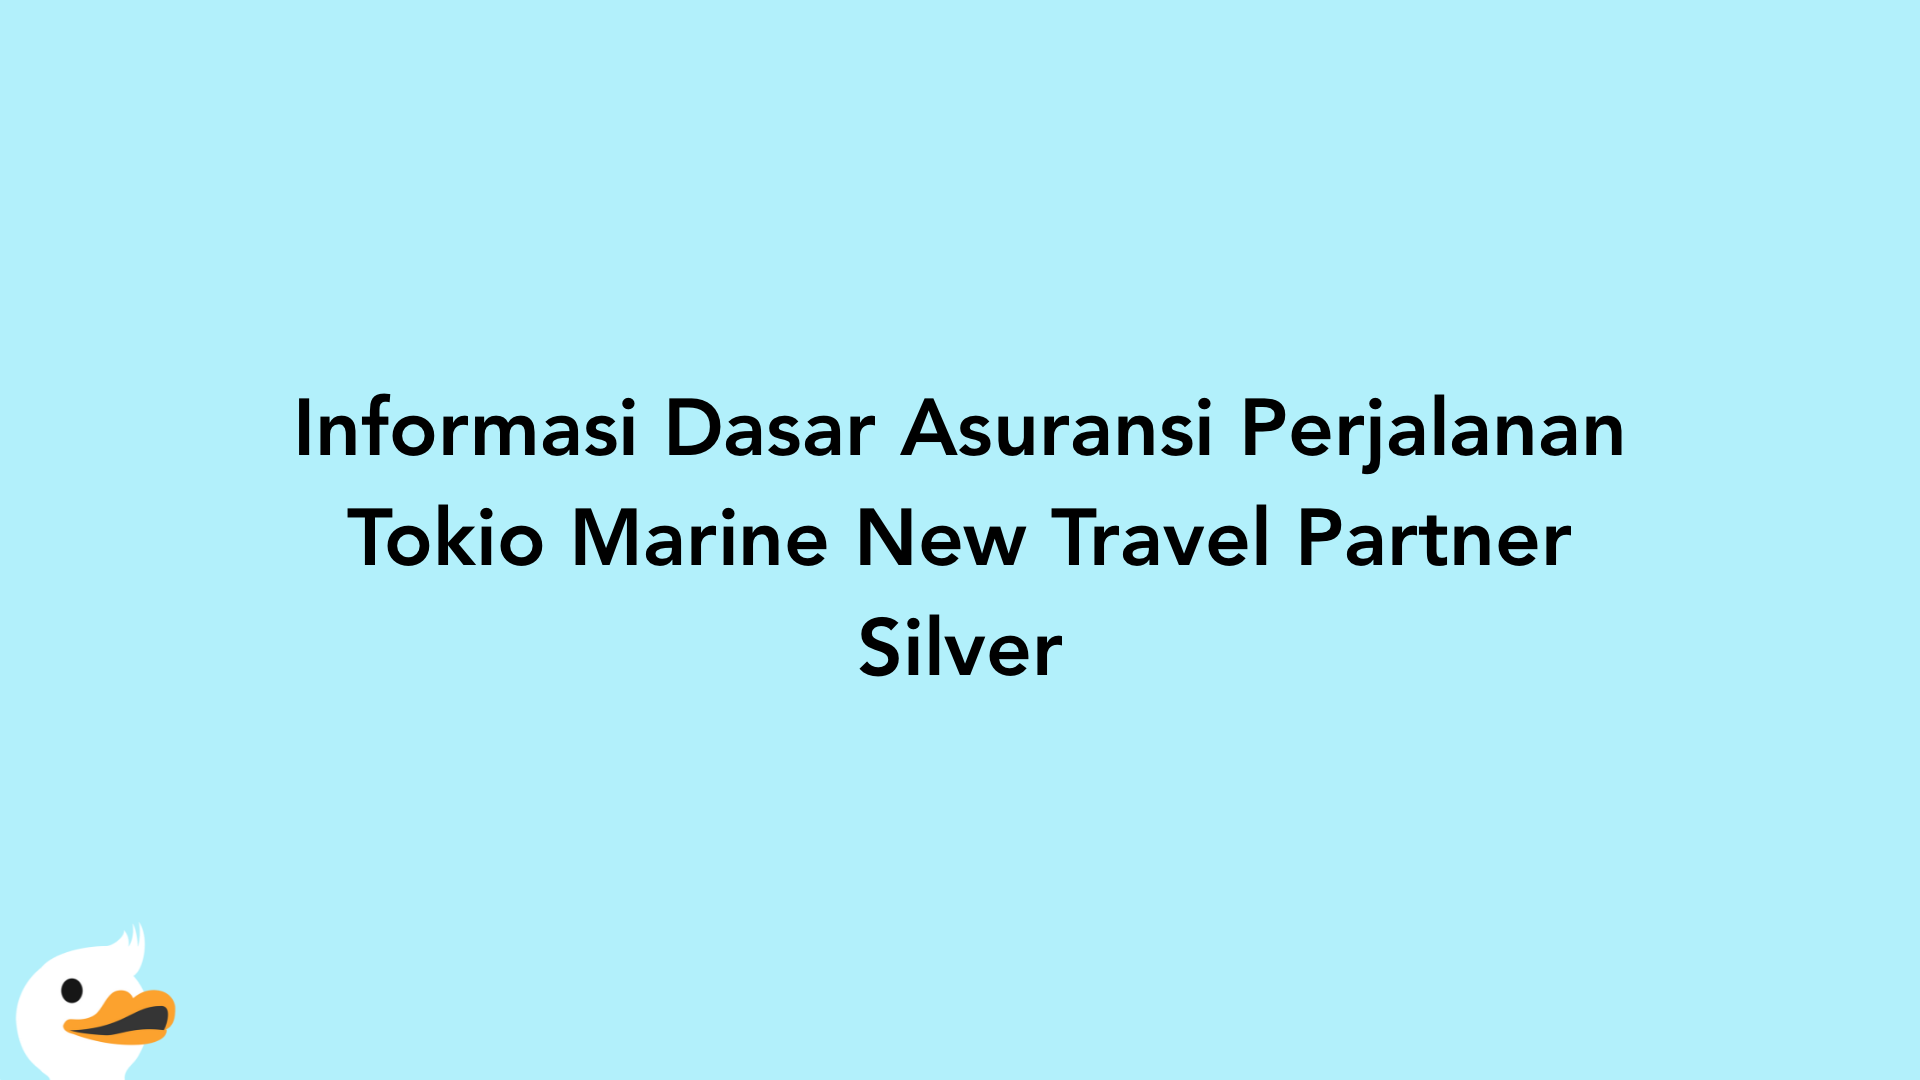 Informasi Dasar Asuransi Perjalanan Tokio Marine New Travel Partner Silver